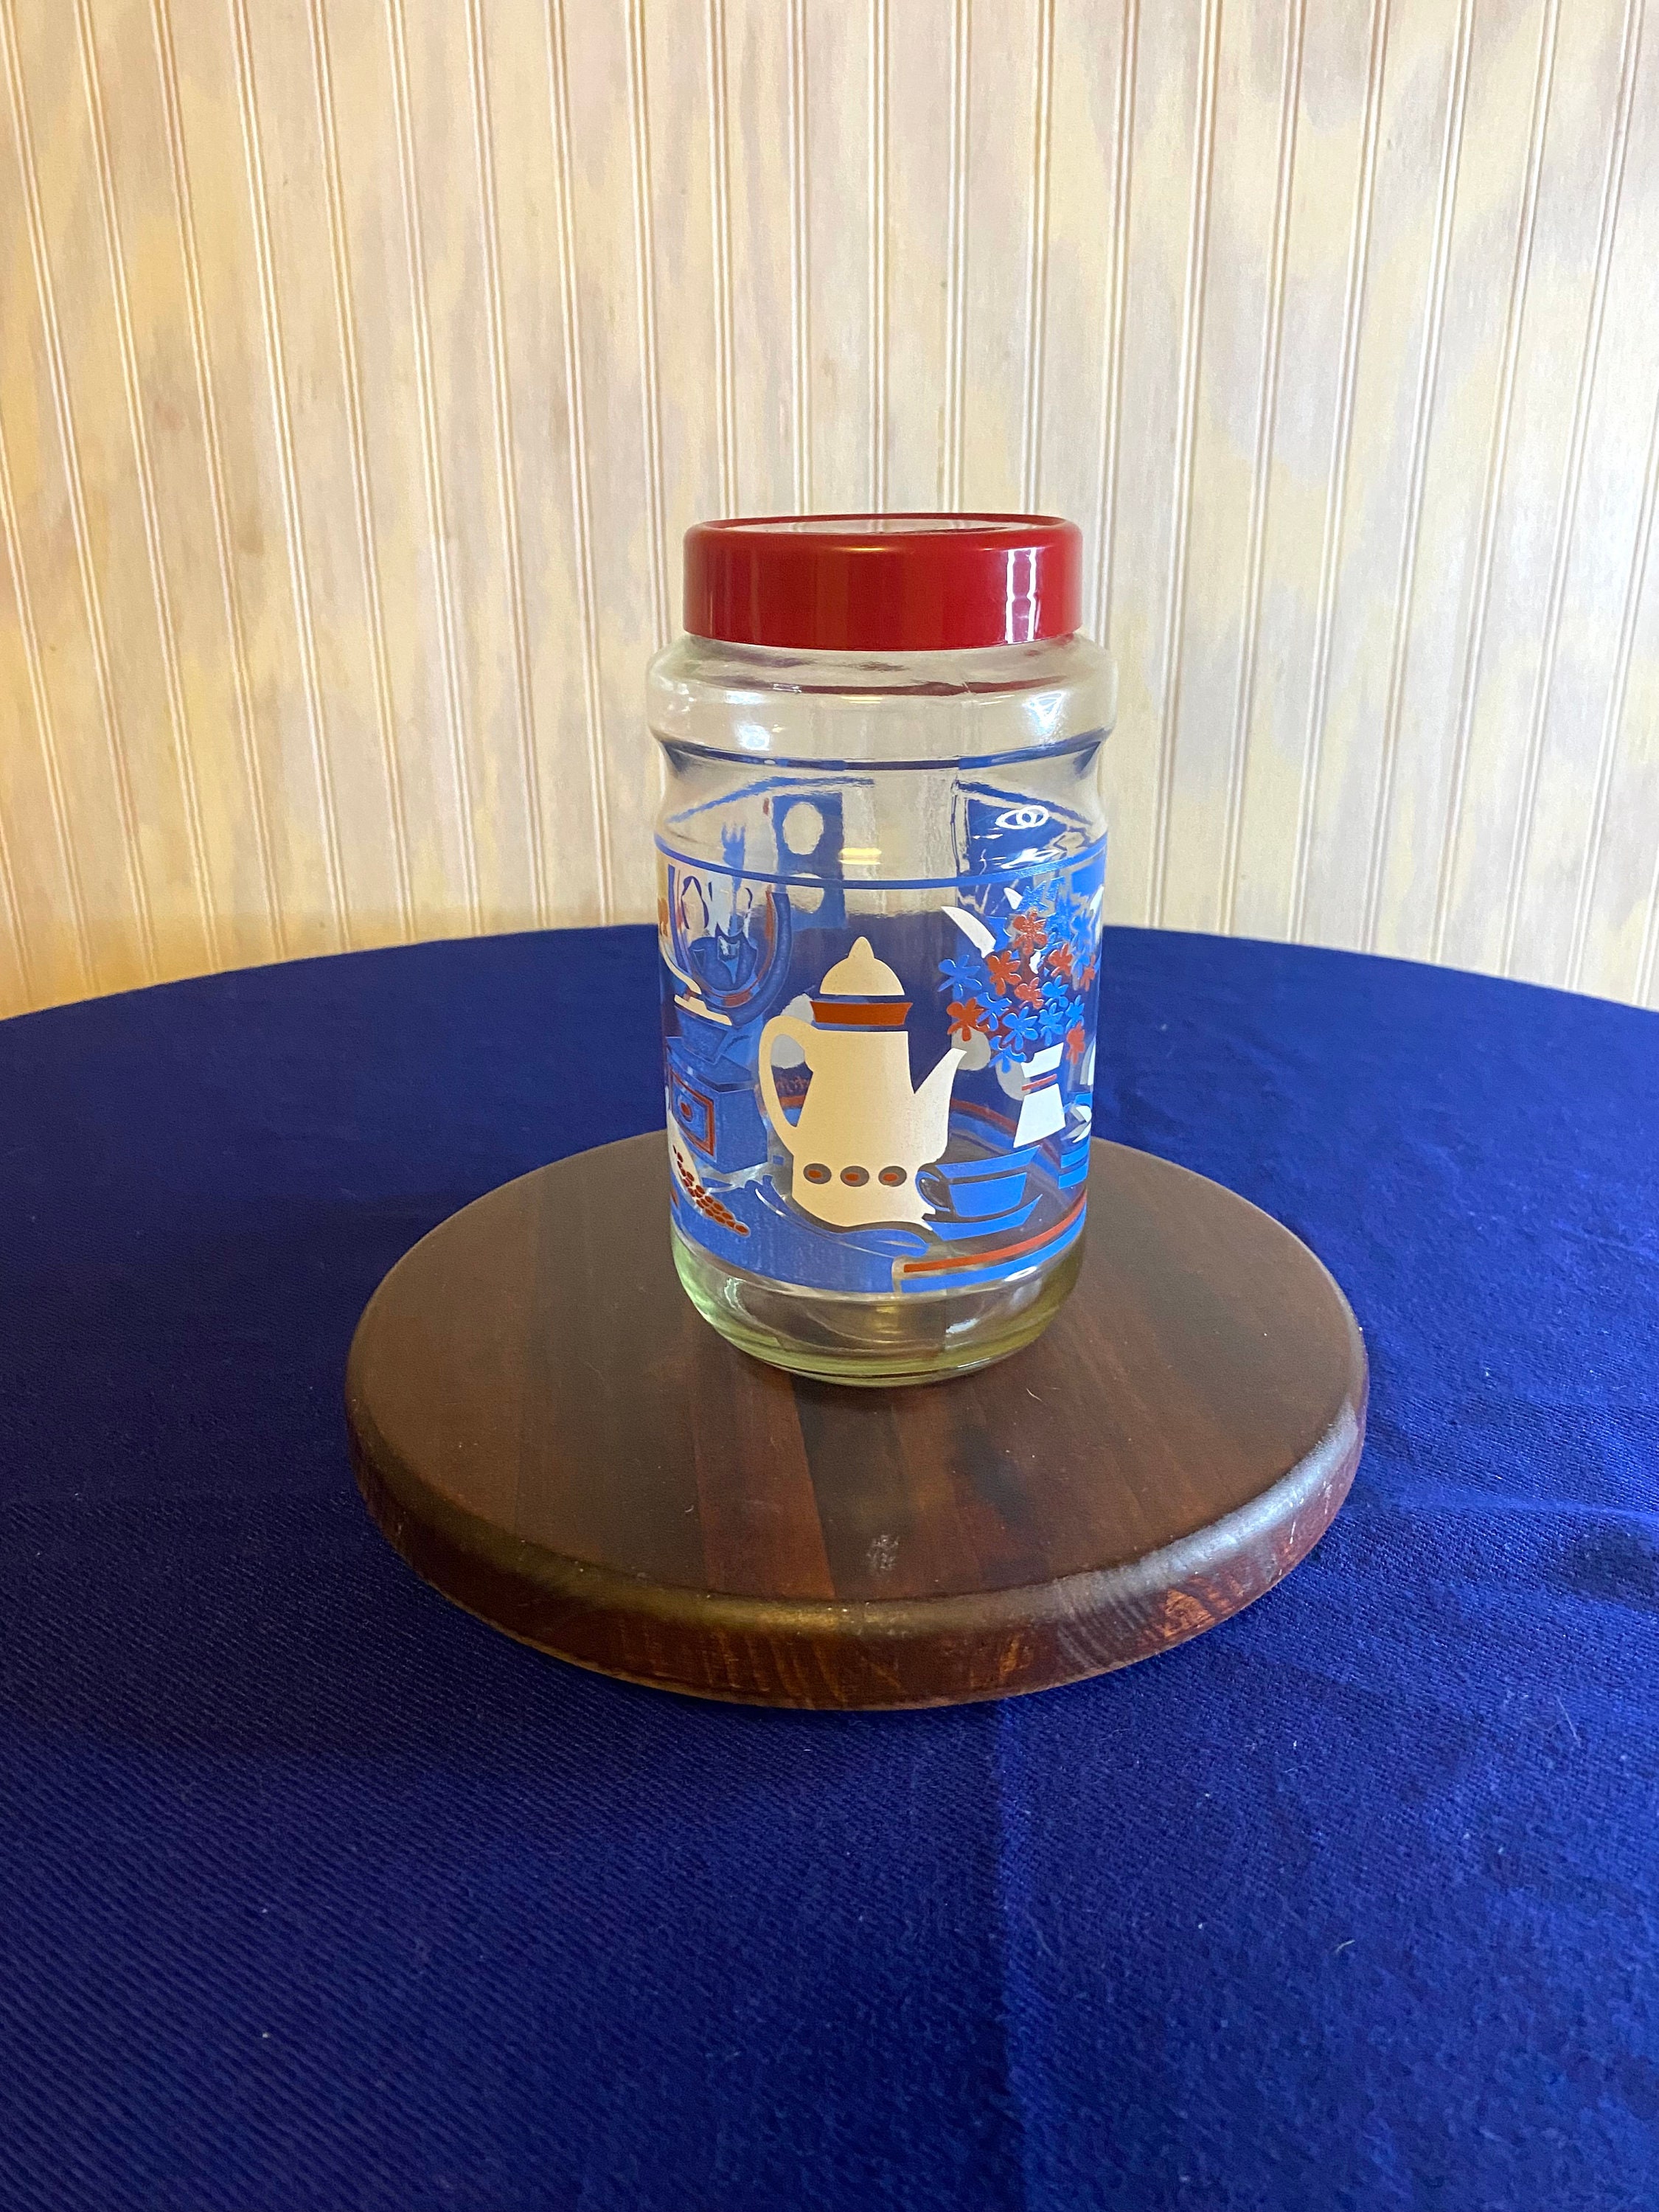 Coffee House Personalized Glass Storage Jar